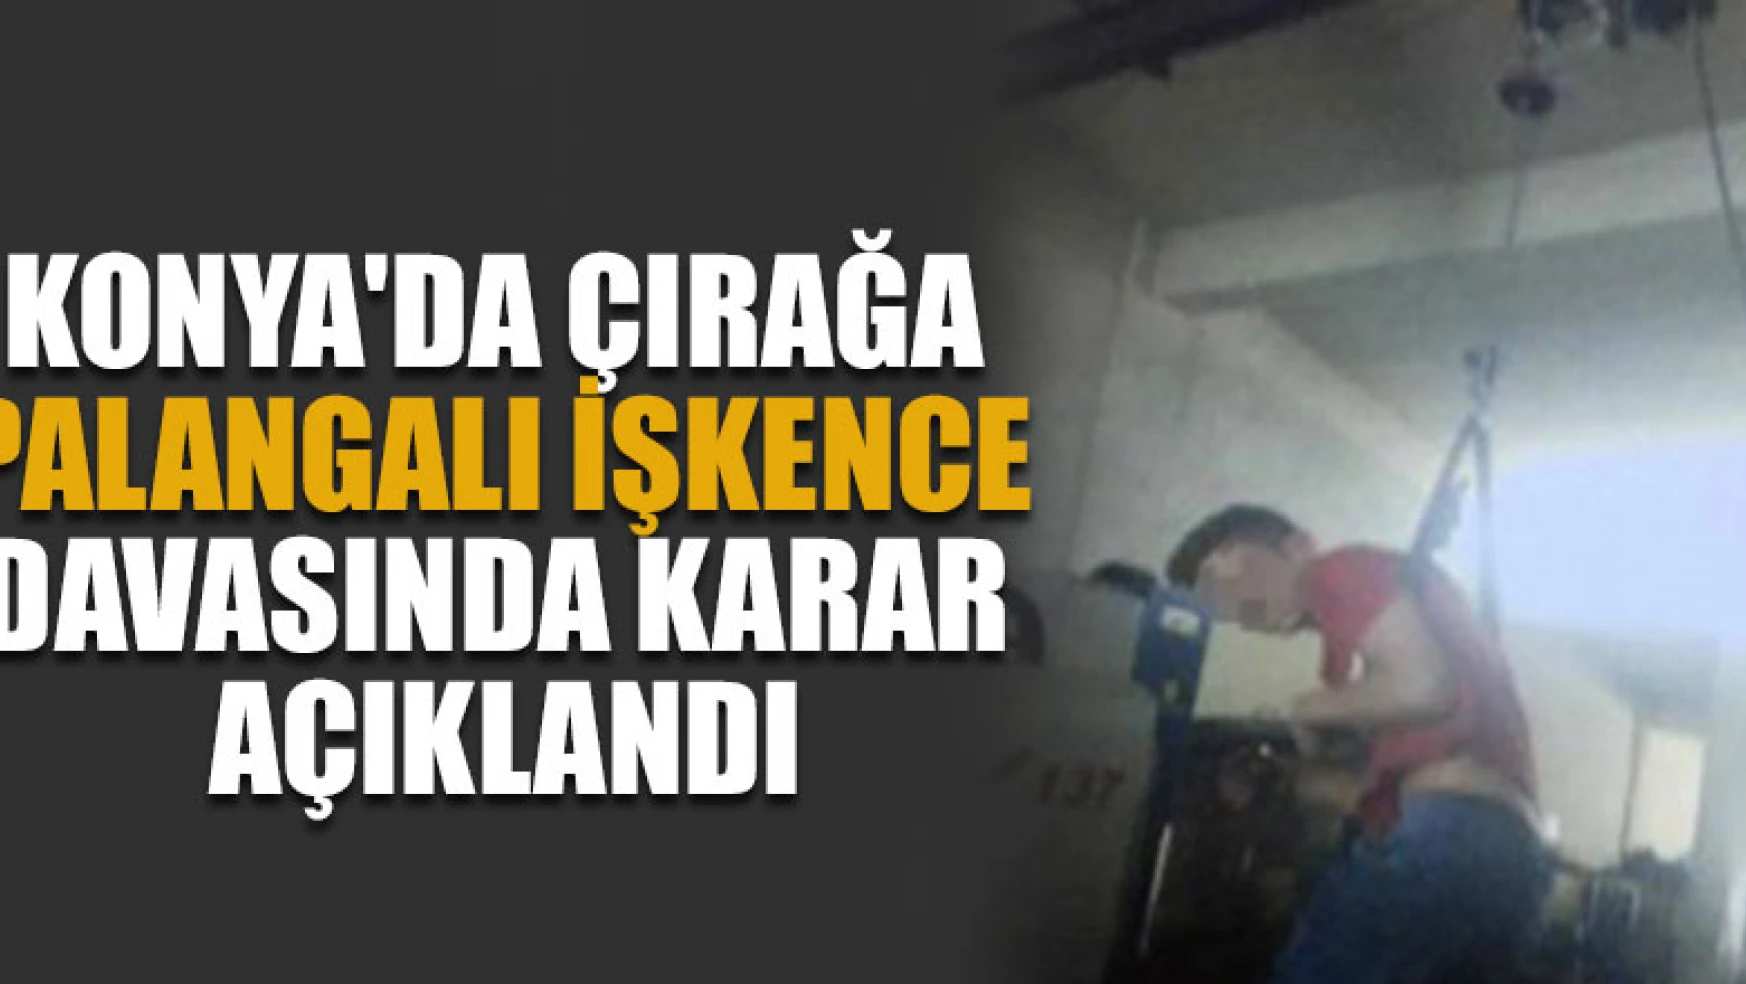 Konya'da çırağa palangalı işkence davasında karar açıklandı